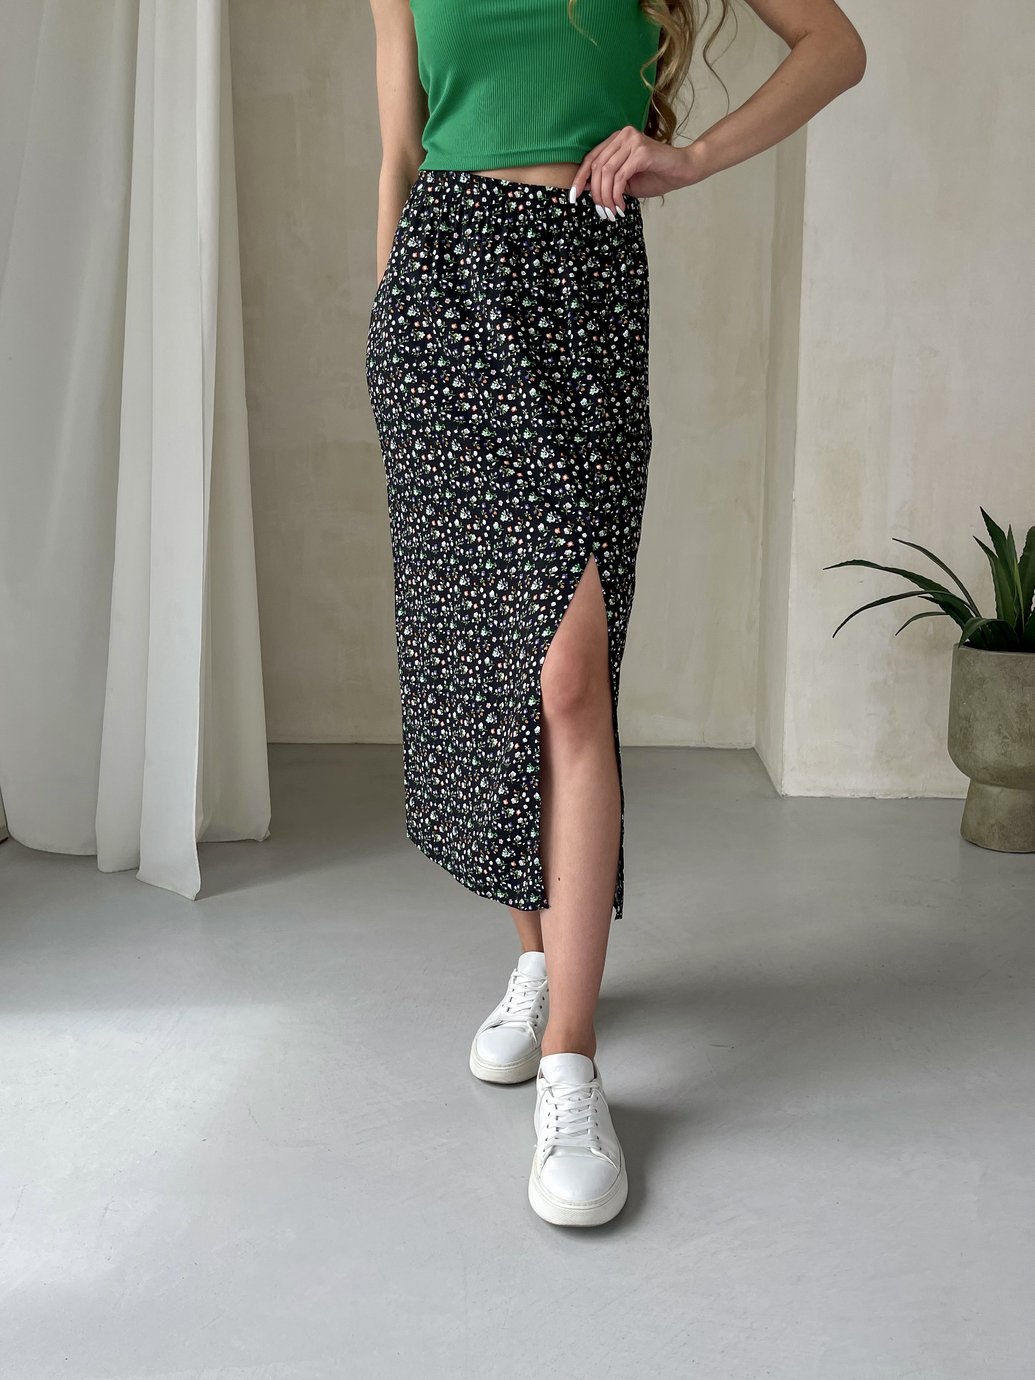 Купить Длинная женская юбка ниже колена с размером в цветочек Merlini Равенна 400000123, размер 46-48 (L-XL) в интернет-магазине